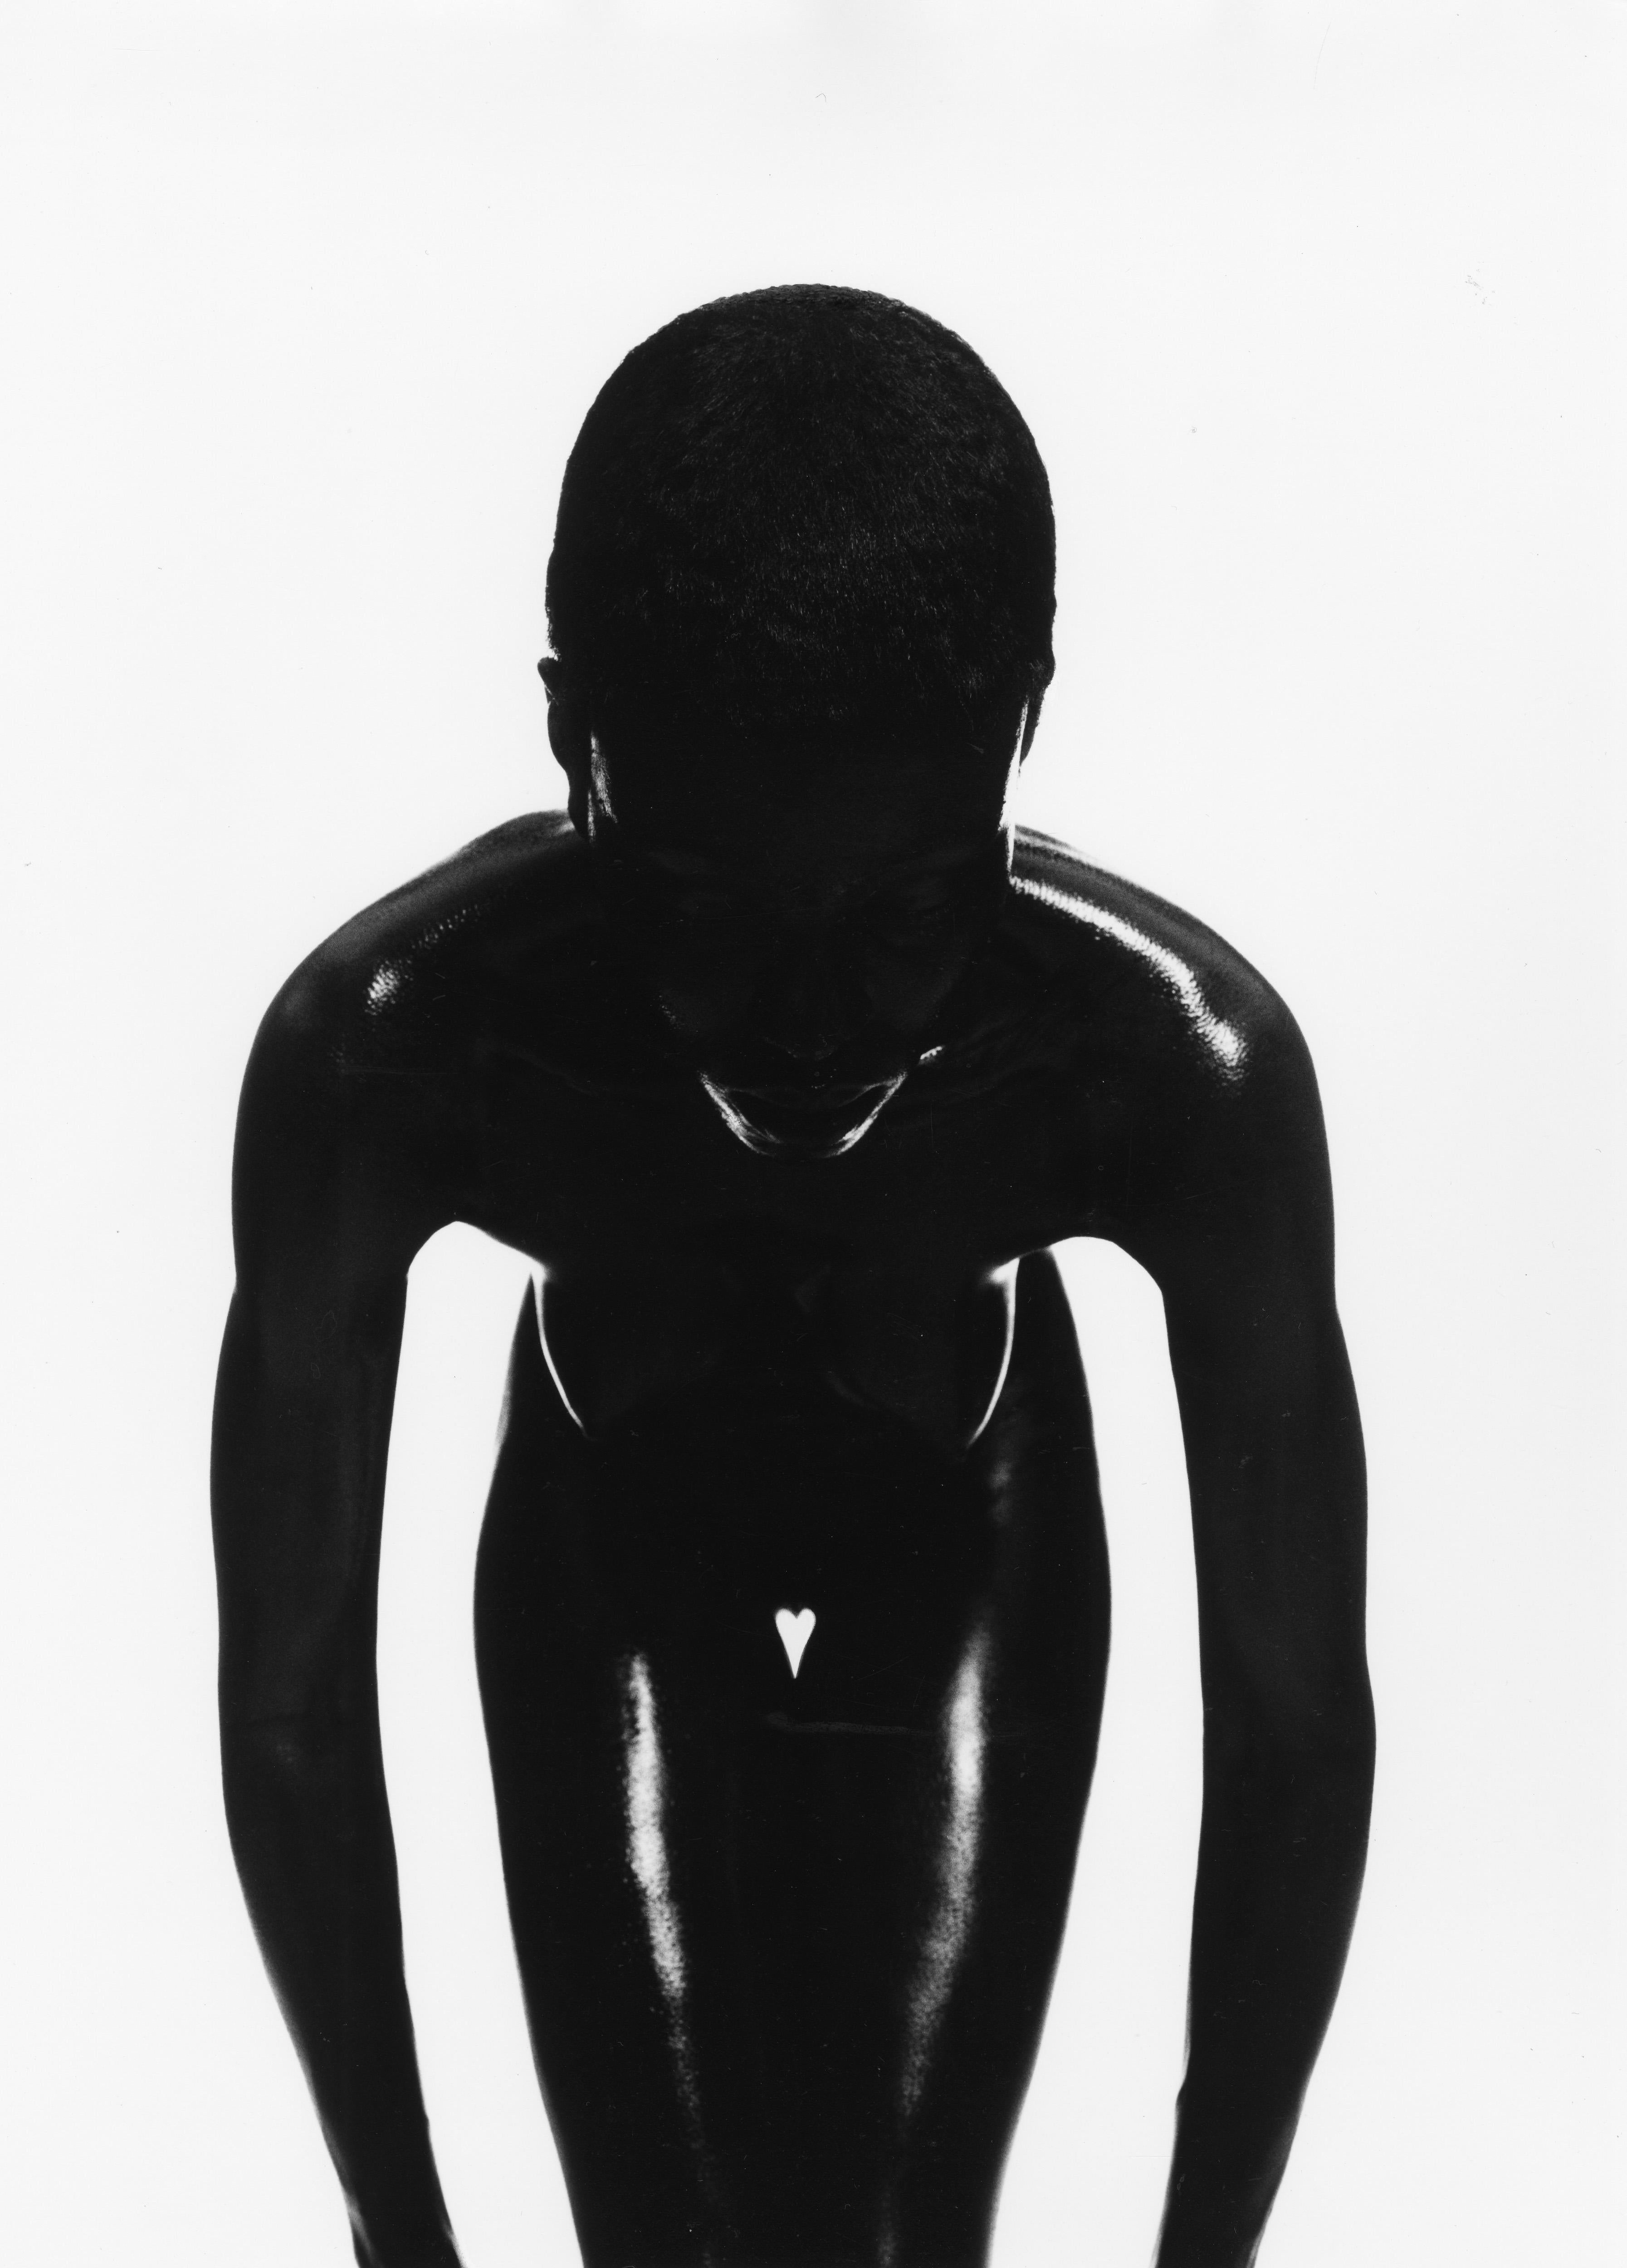 Thierry Le Gouès Black and White Photograph – Tuly, Paris 1994, Paris